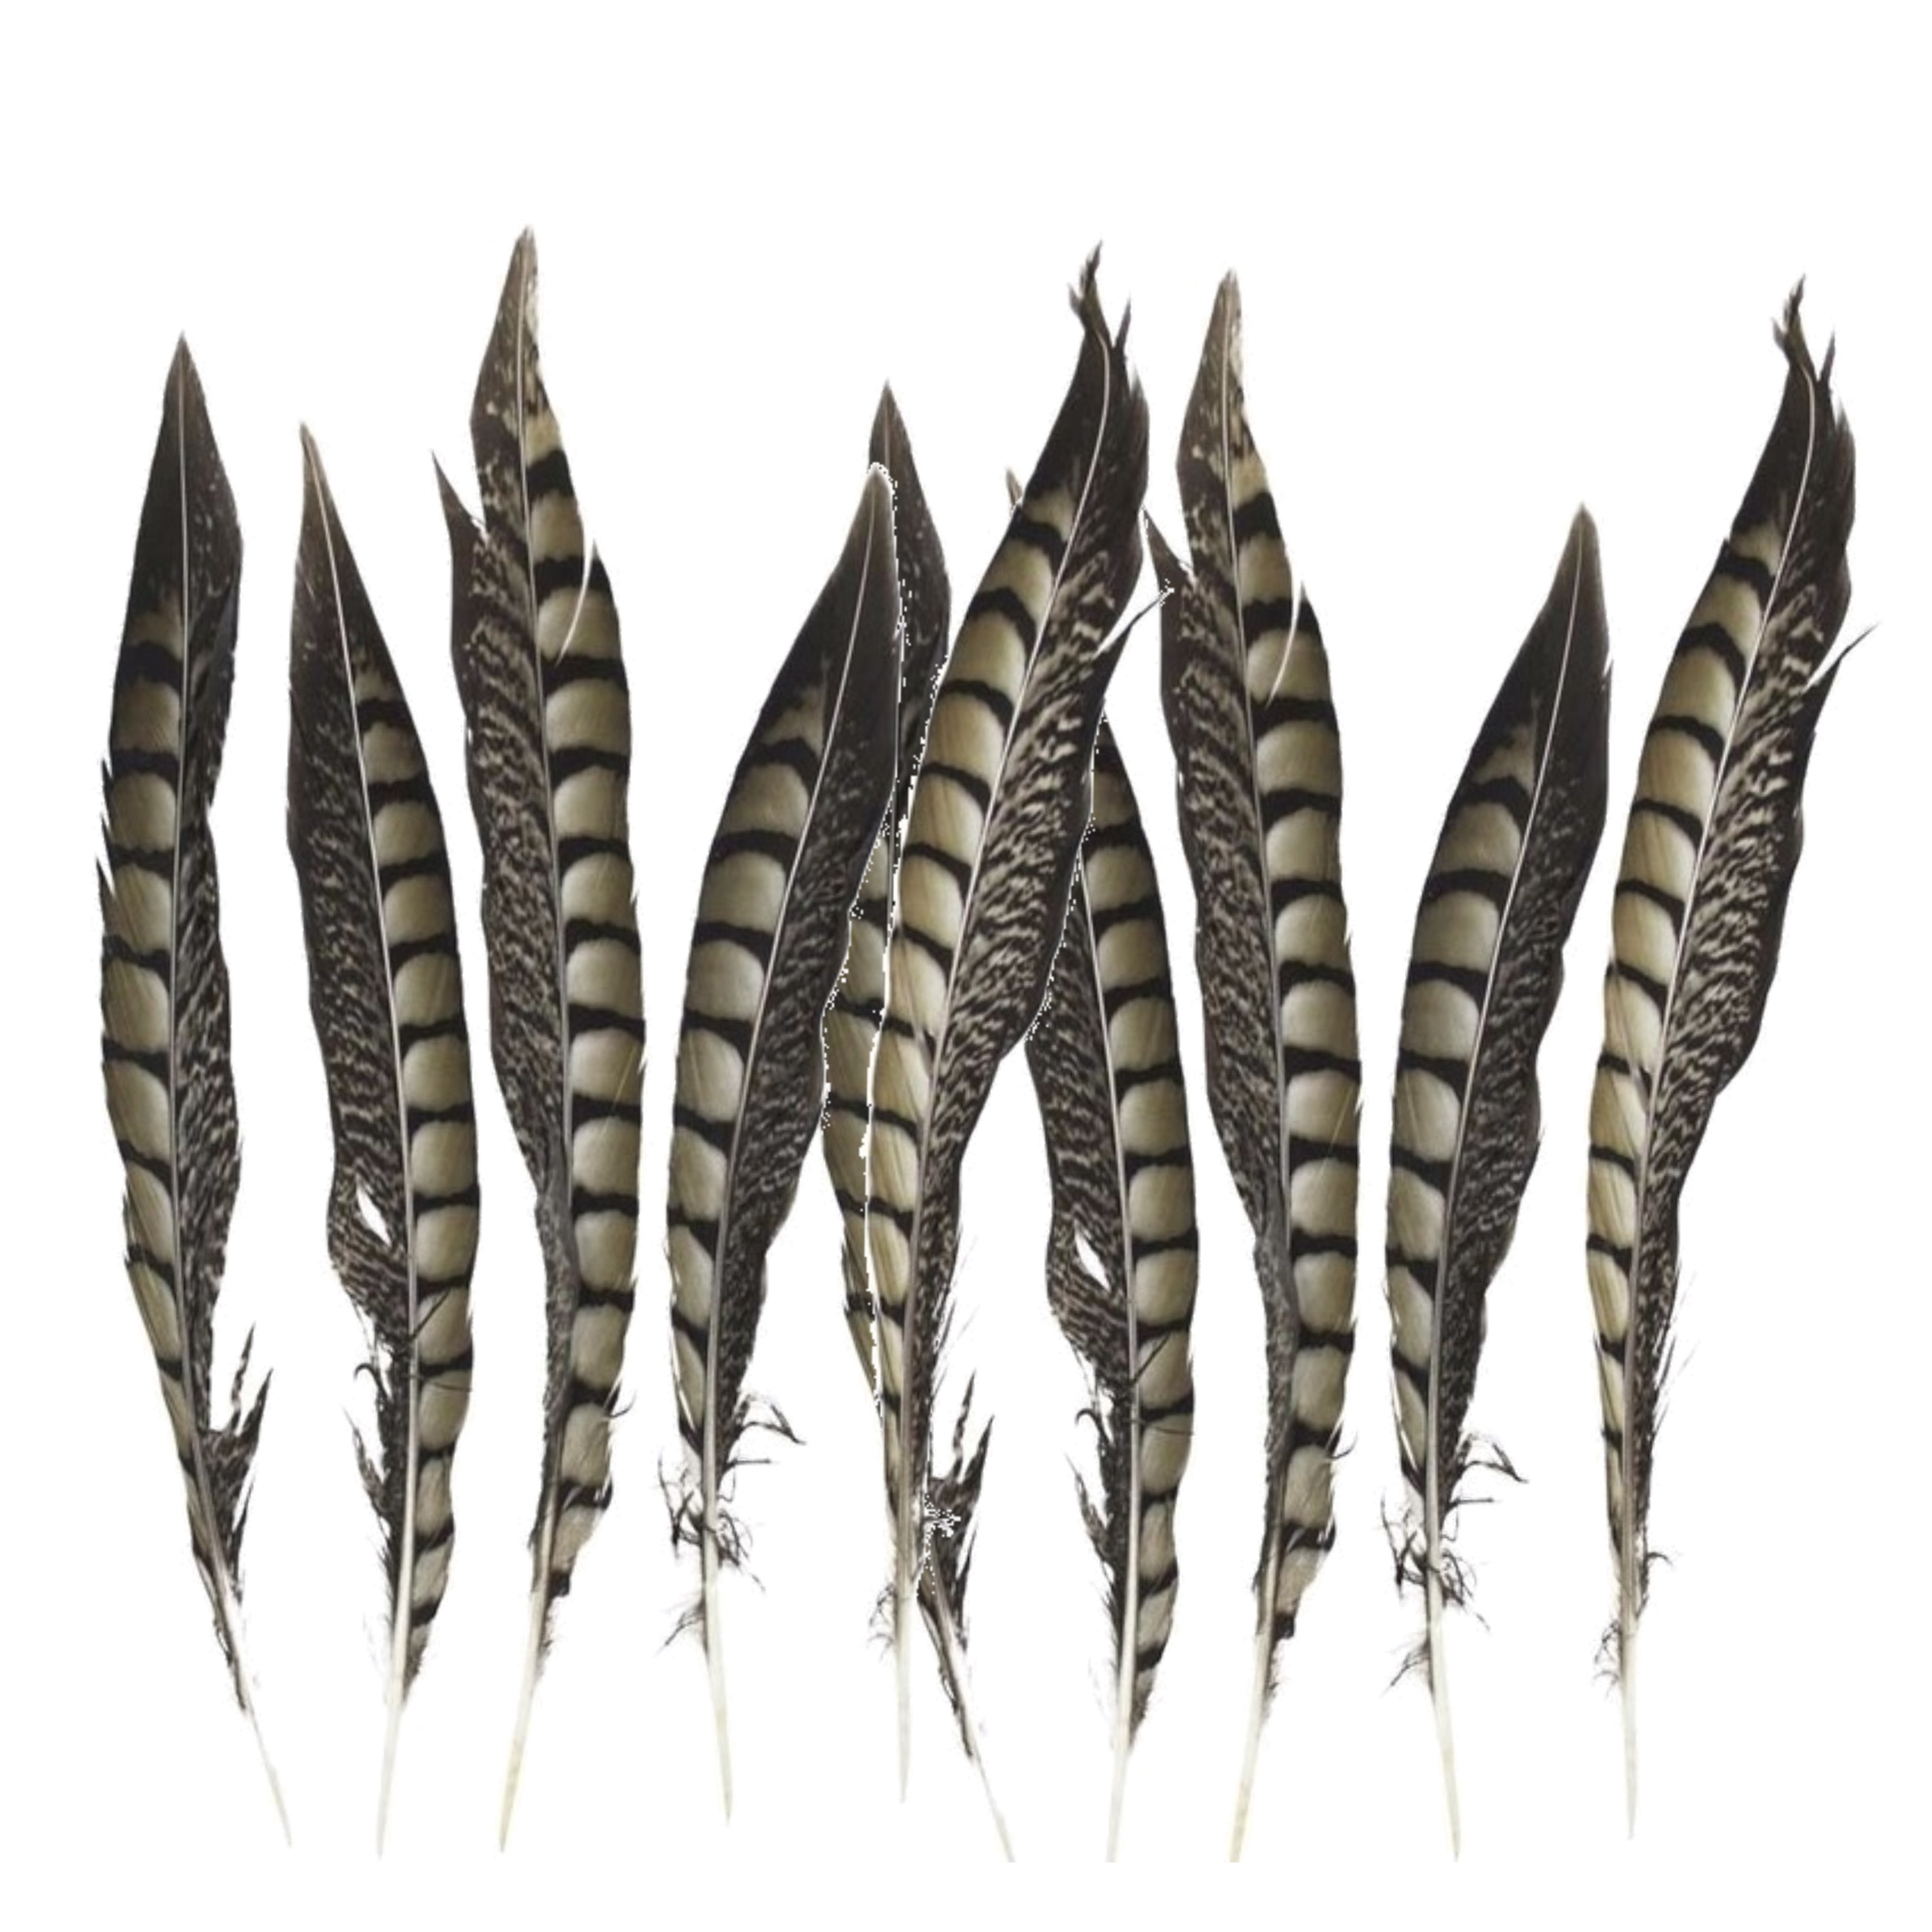 Vogelveren/fazantenveren - Setje van 10x stuks - Lady Amherst fazant veren van 28 cm -